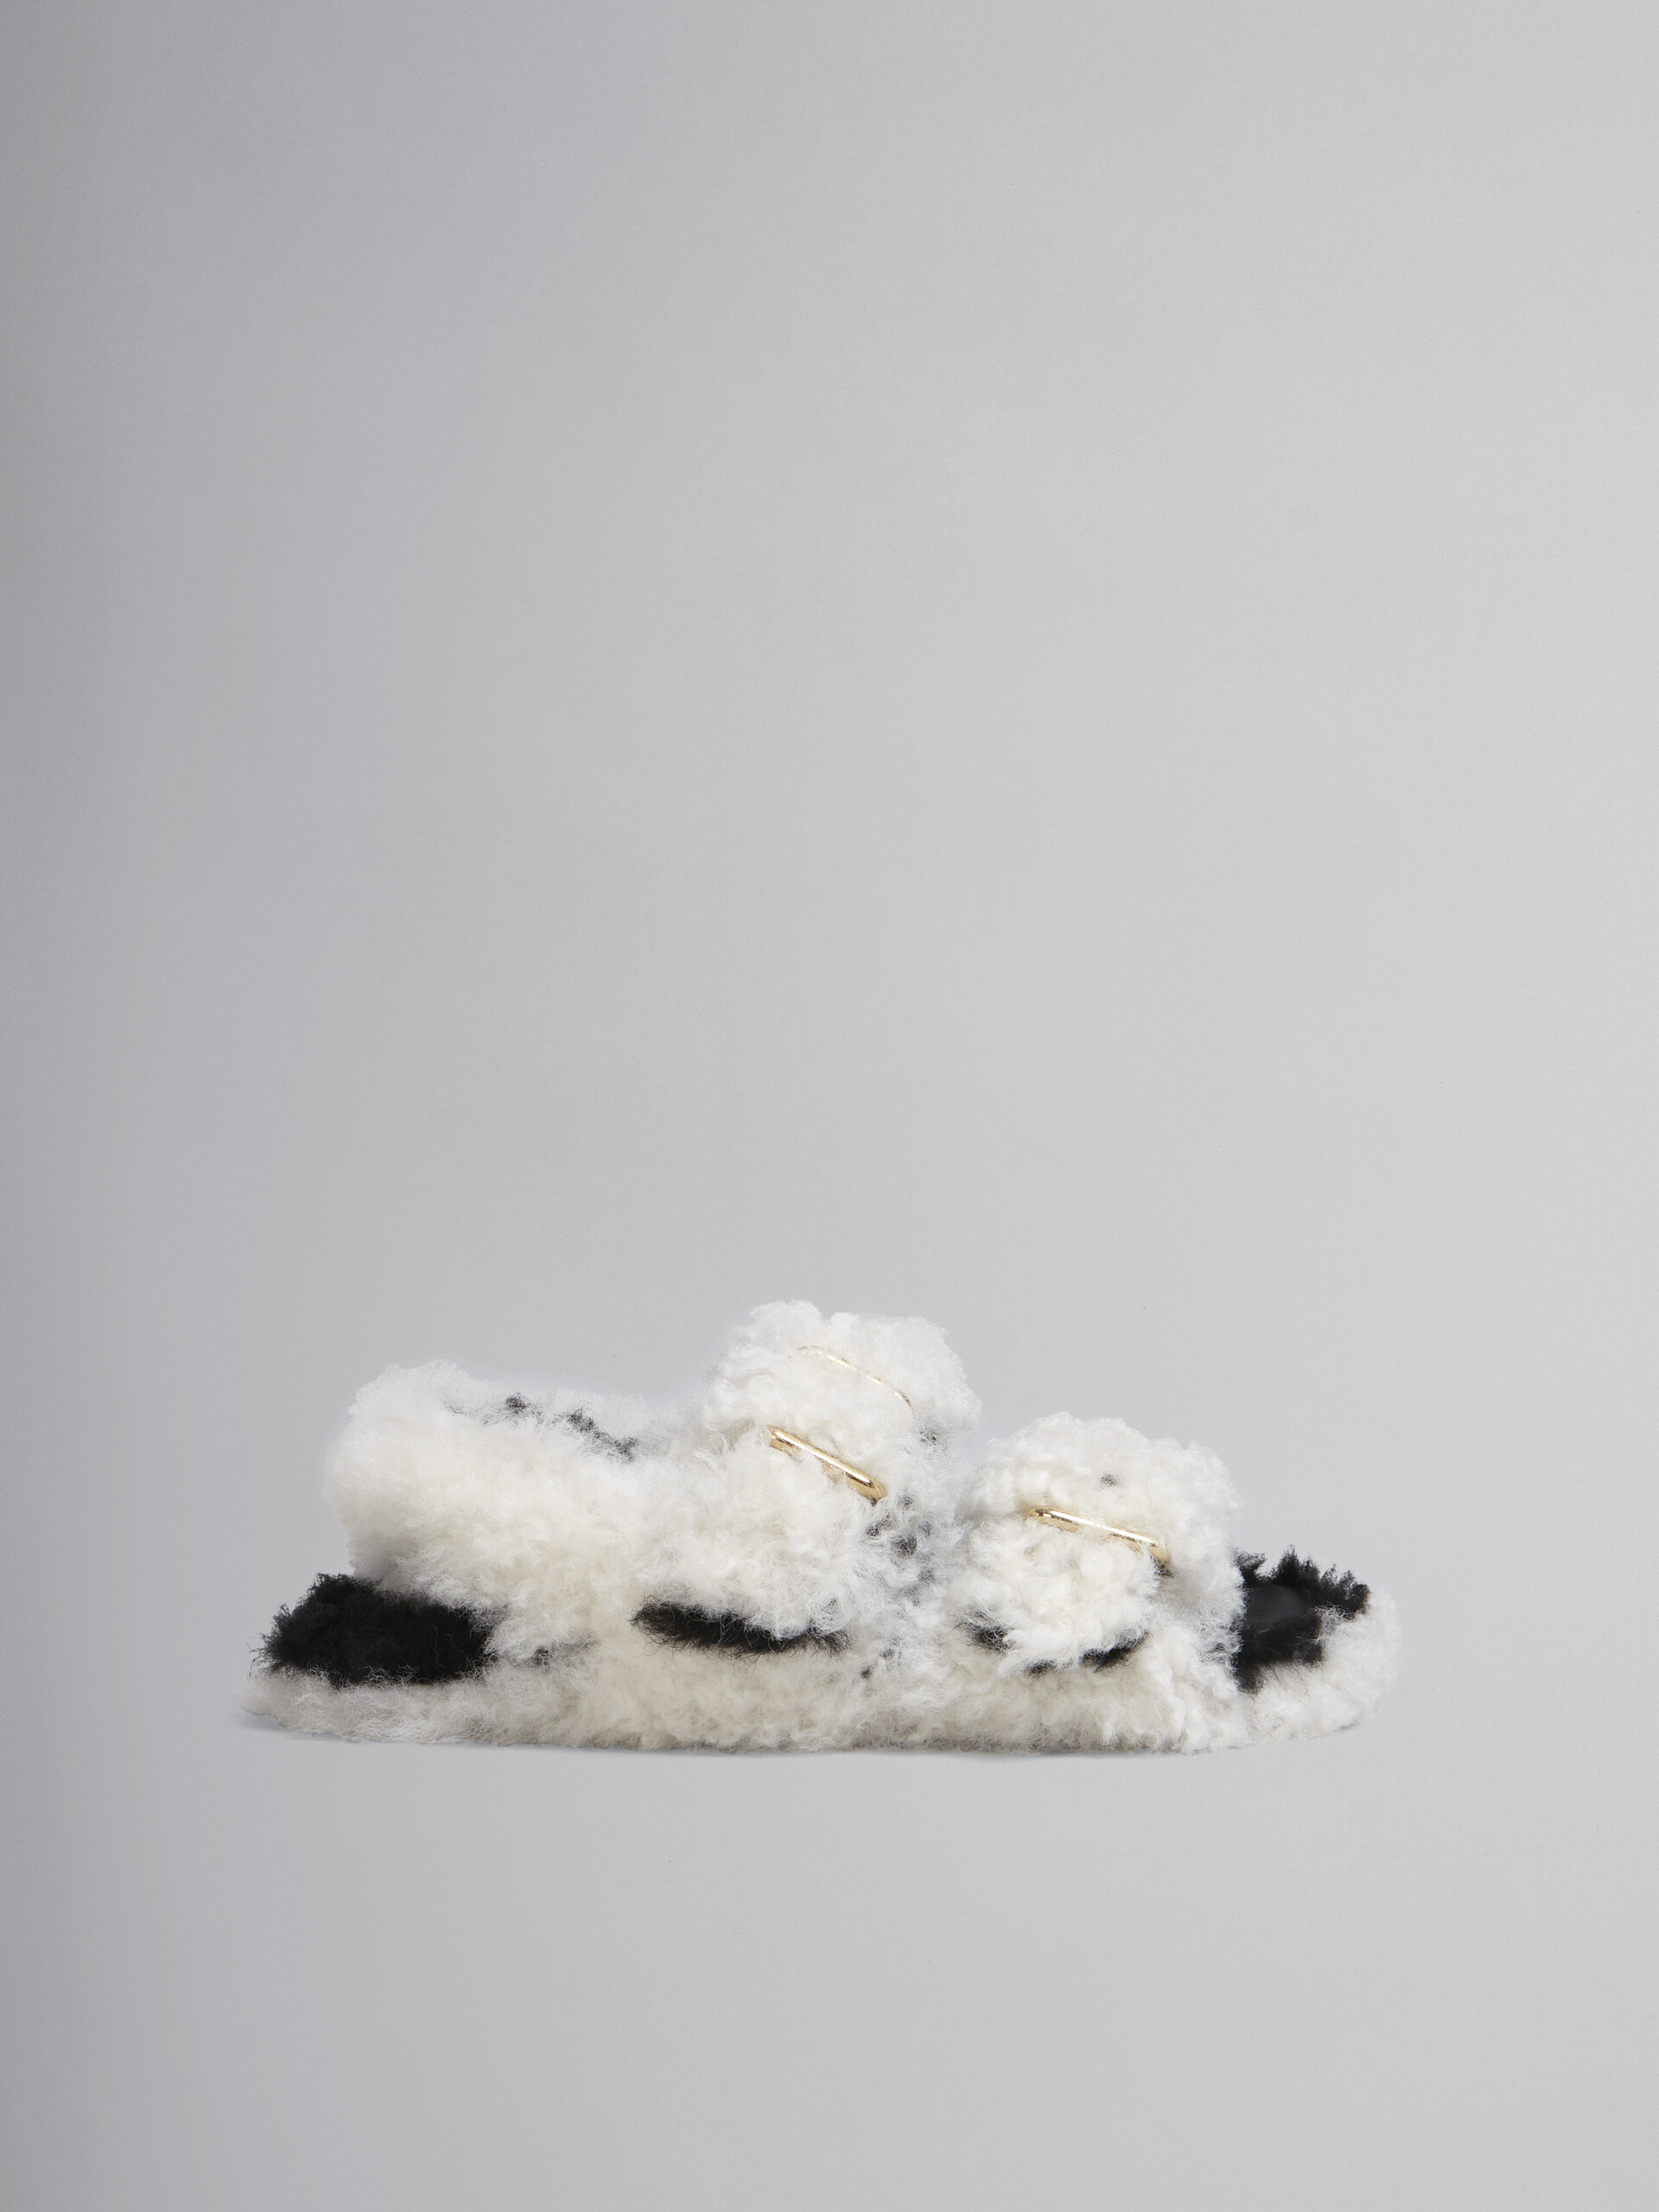 Sandalia Fussbett de borreguito blanco con doble hebilla - Sandalias - Image 1